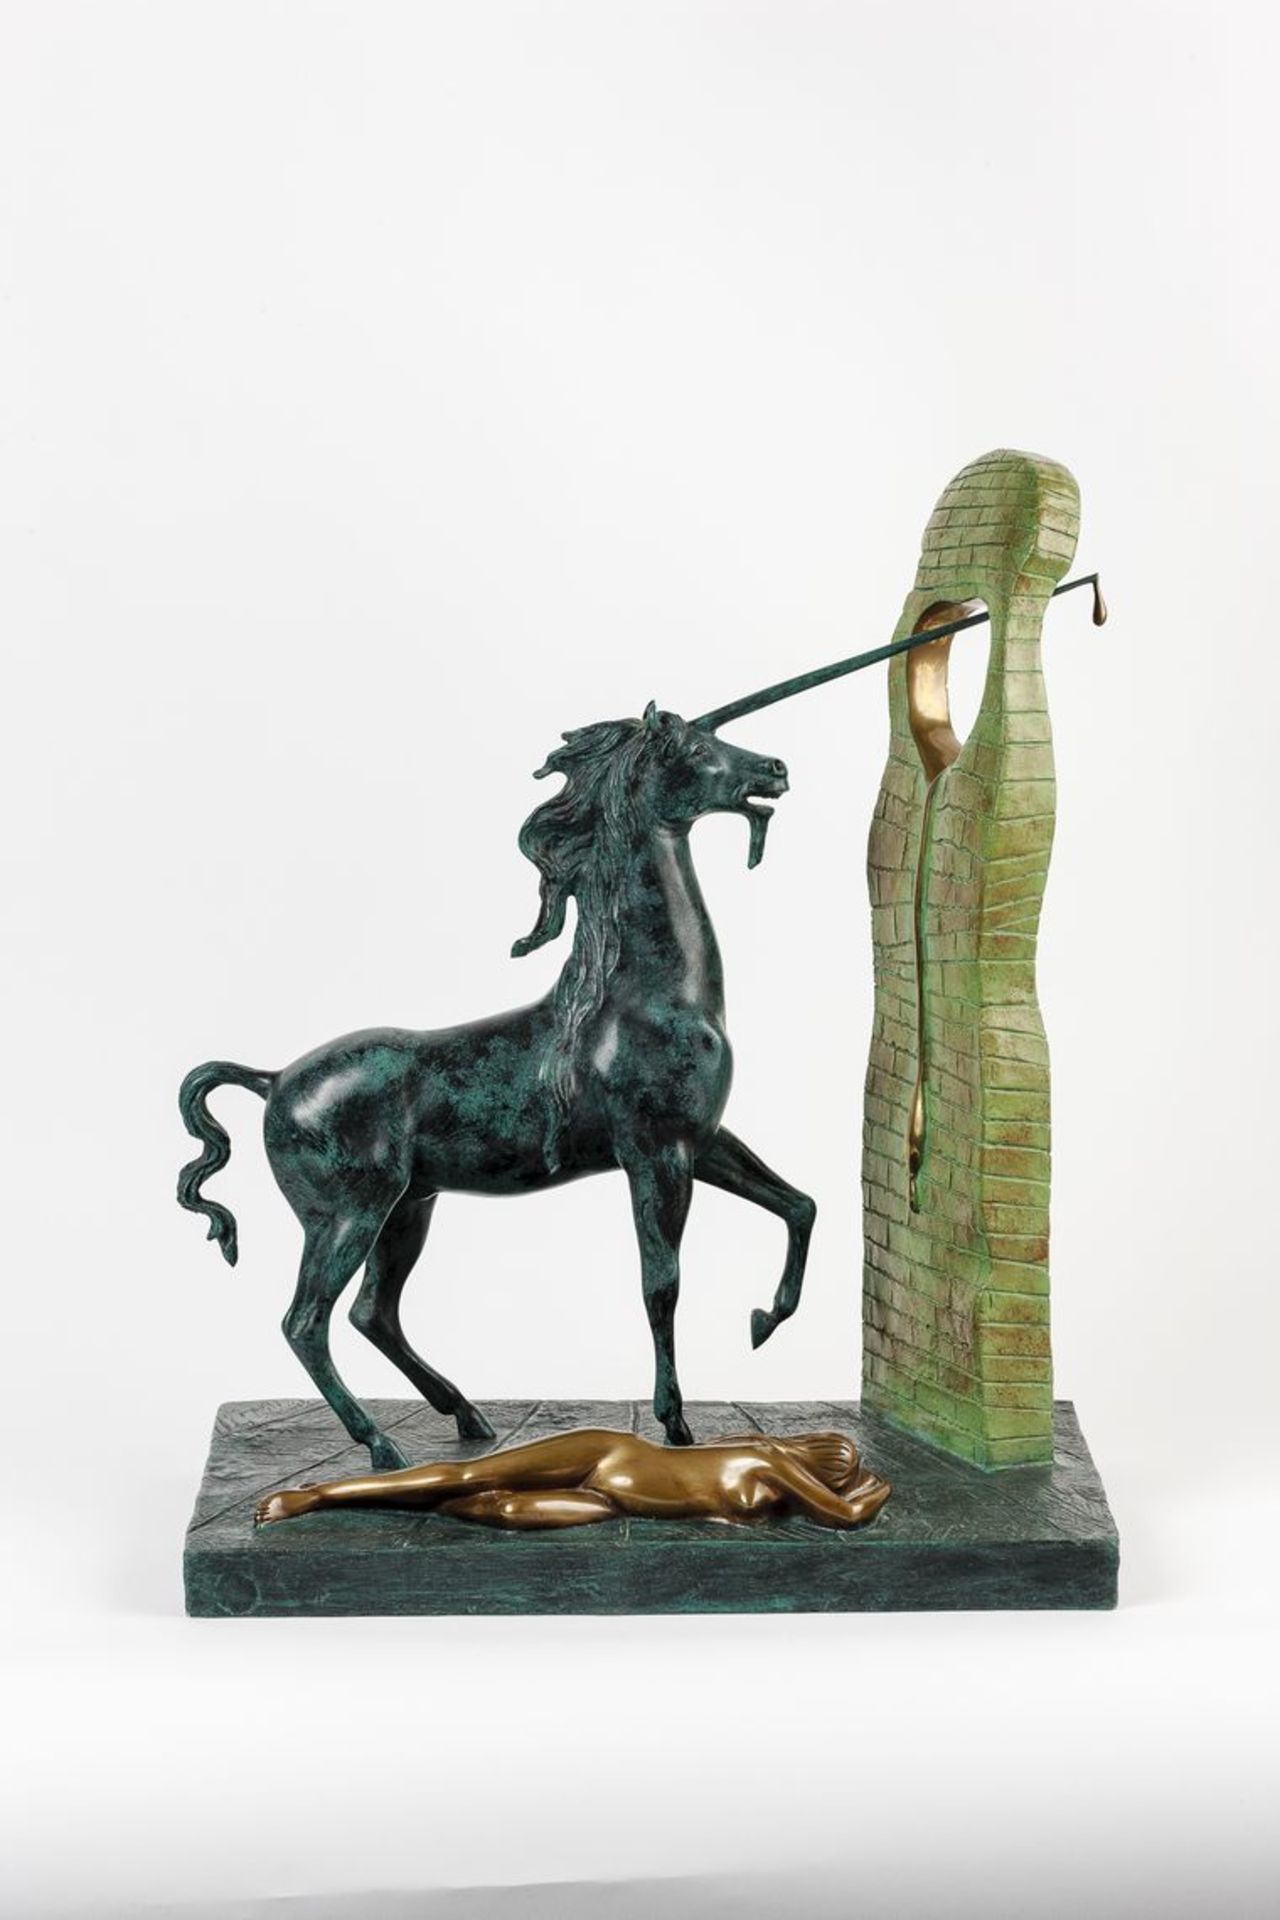 Dali, Salvador1904 Figueras - 1989 ebd. Einhorn und liegender weiblicher Akt. Bronze, gegossen. Grün